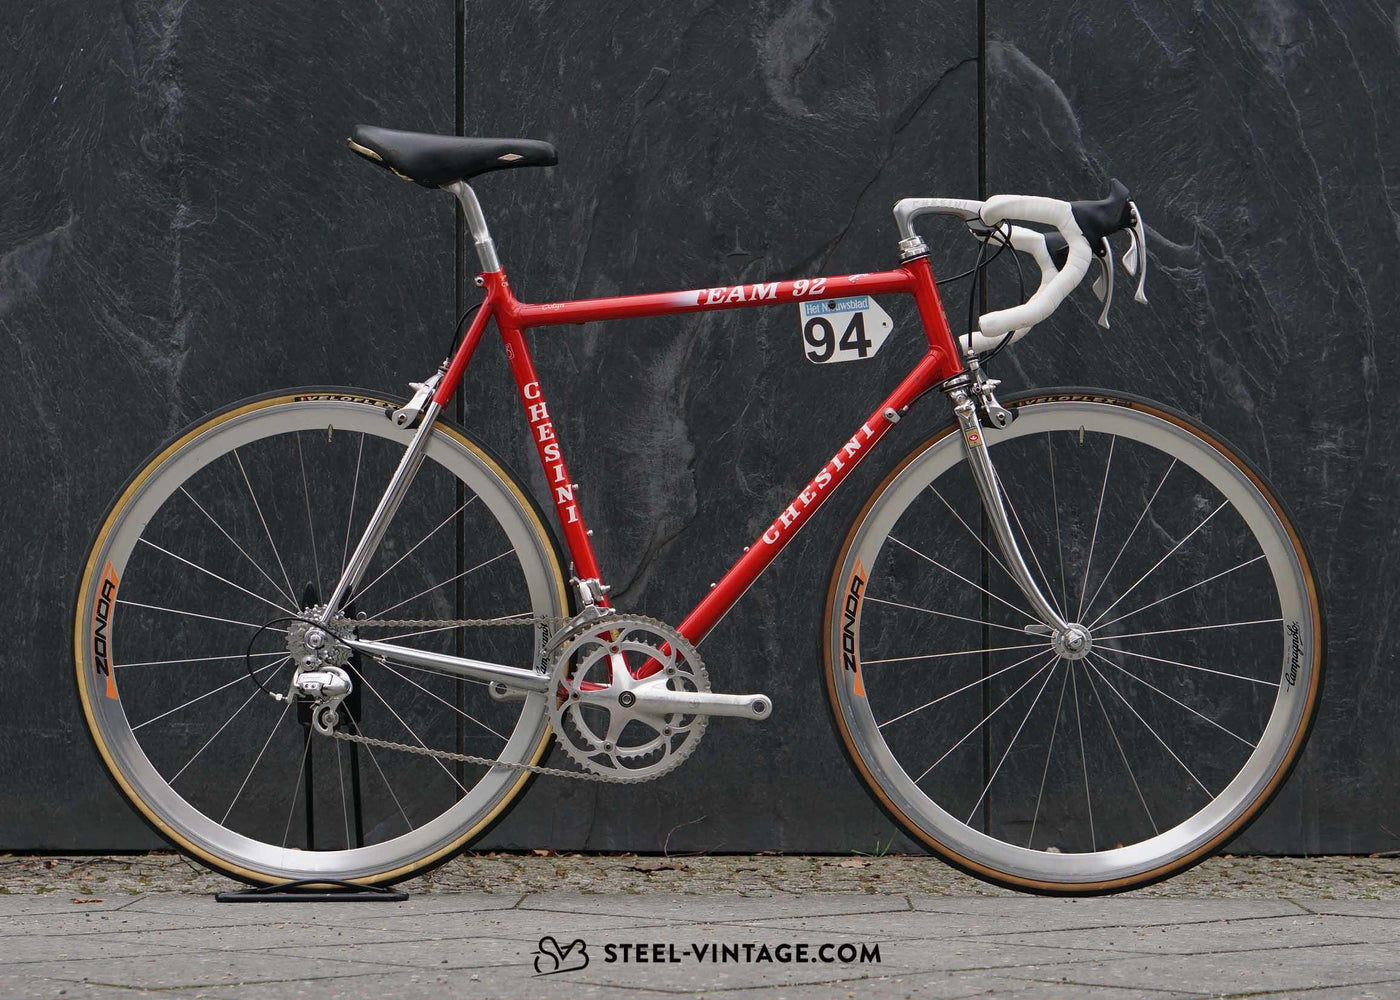 Chesini Innovation Team 92 Vintage Road Bicycle - Steel Vintage Bikes